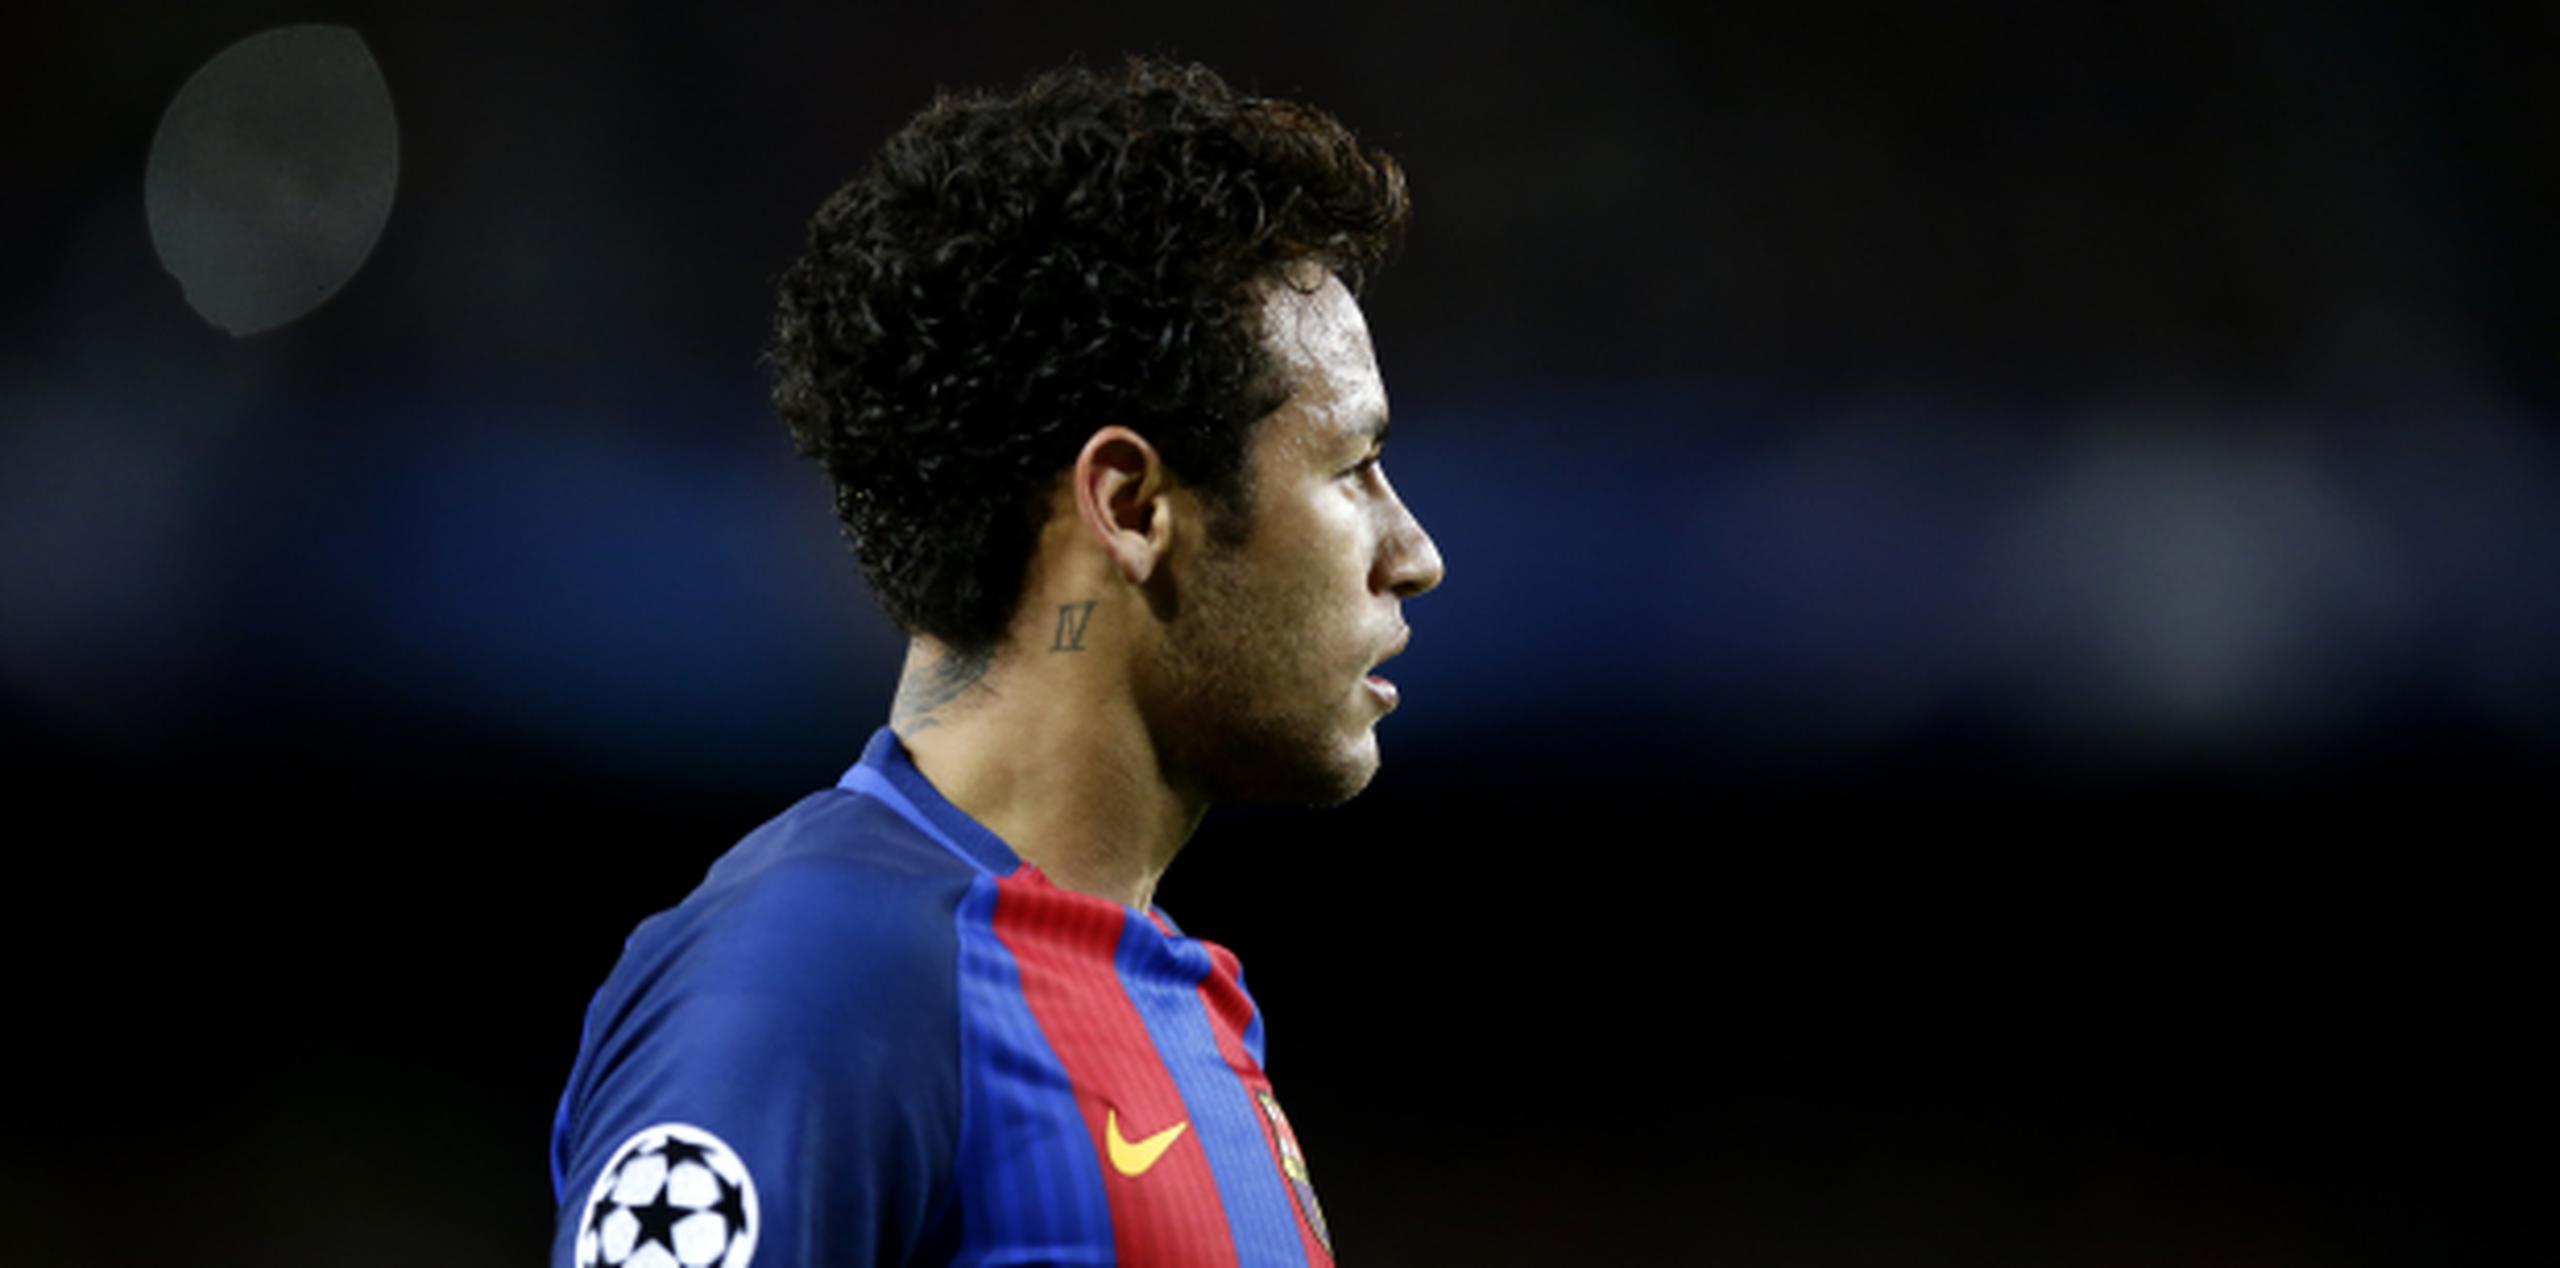 El Tribunal Administrativo del Deporte advirtió al Barcelona que la sanción de Neymar debe cumplirse y no puede alinear mañana ante el Real Madrid. (AP/Manu Fernandez)